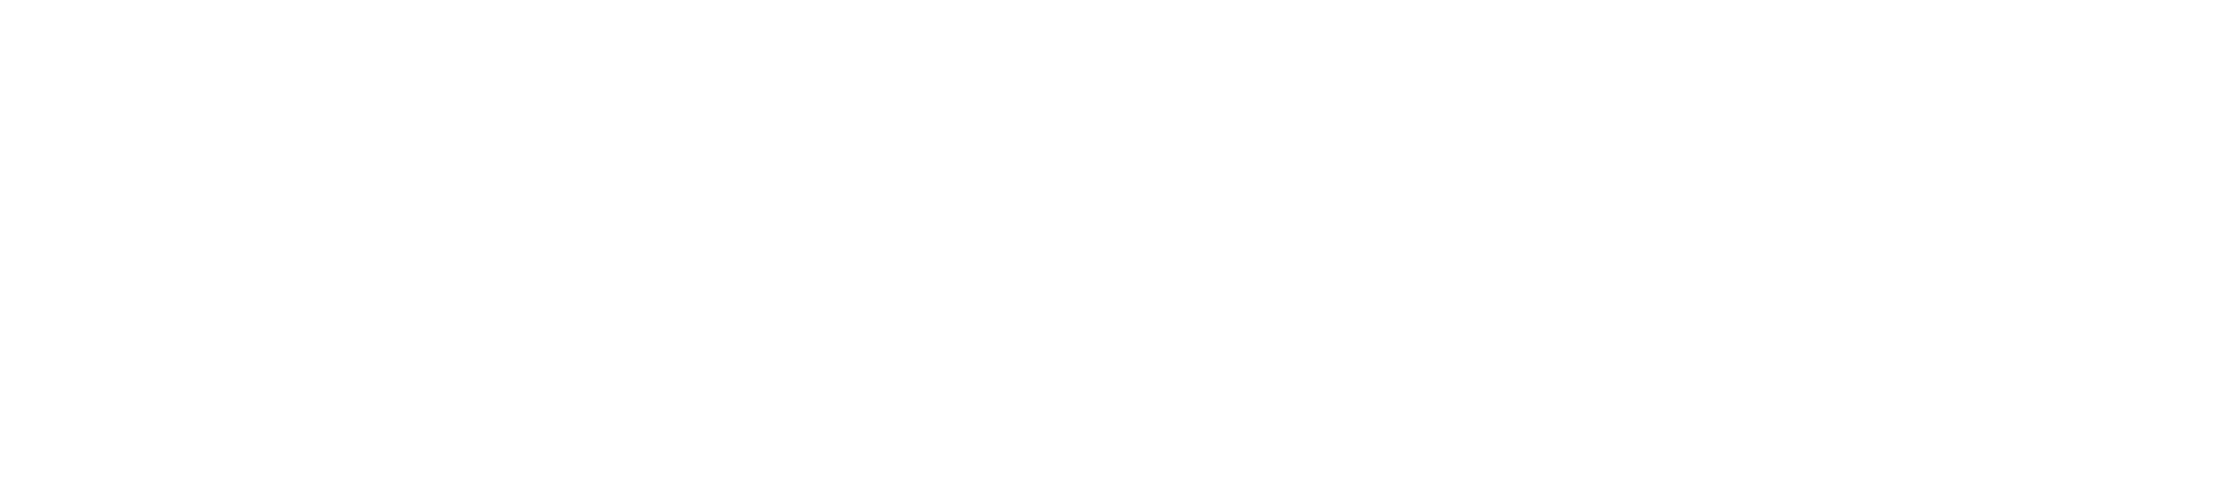 Isogonal